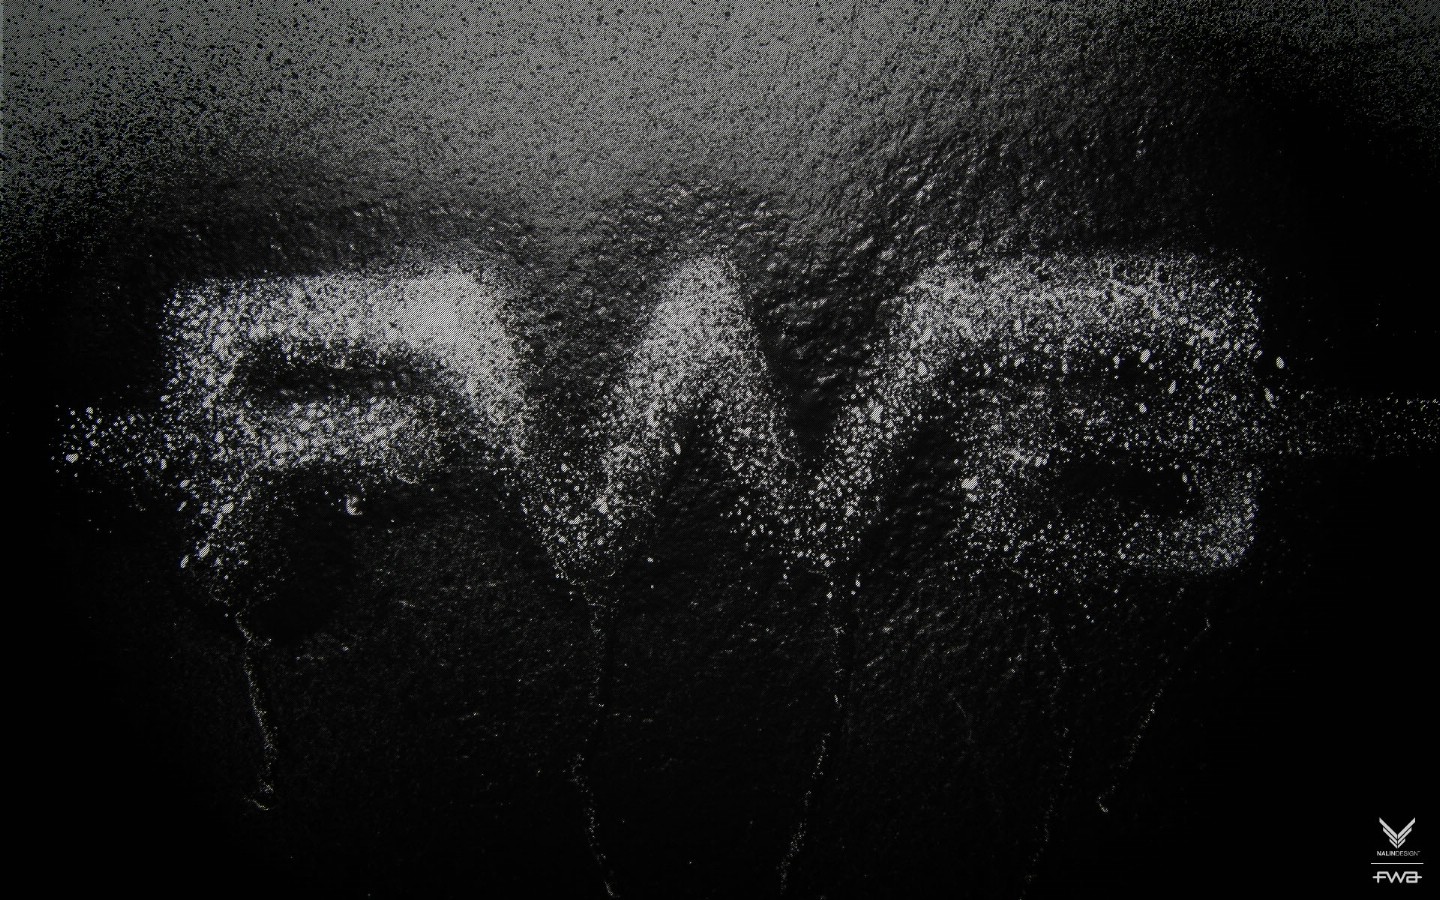 壁纸1440x900FWA黑色专辑壁纸壁纸 FWA黑色专辑壁纸壁纸 FWA黑色专辑壁纸图片 FWA黑色专辑壁纸素材 创意壁纸 创意图库 创意图片素材桌面壁纸